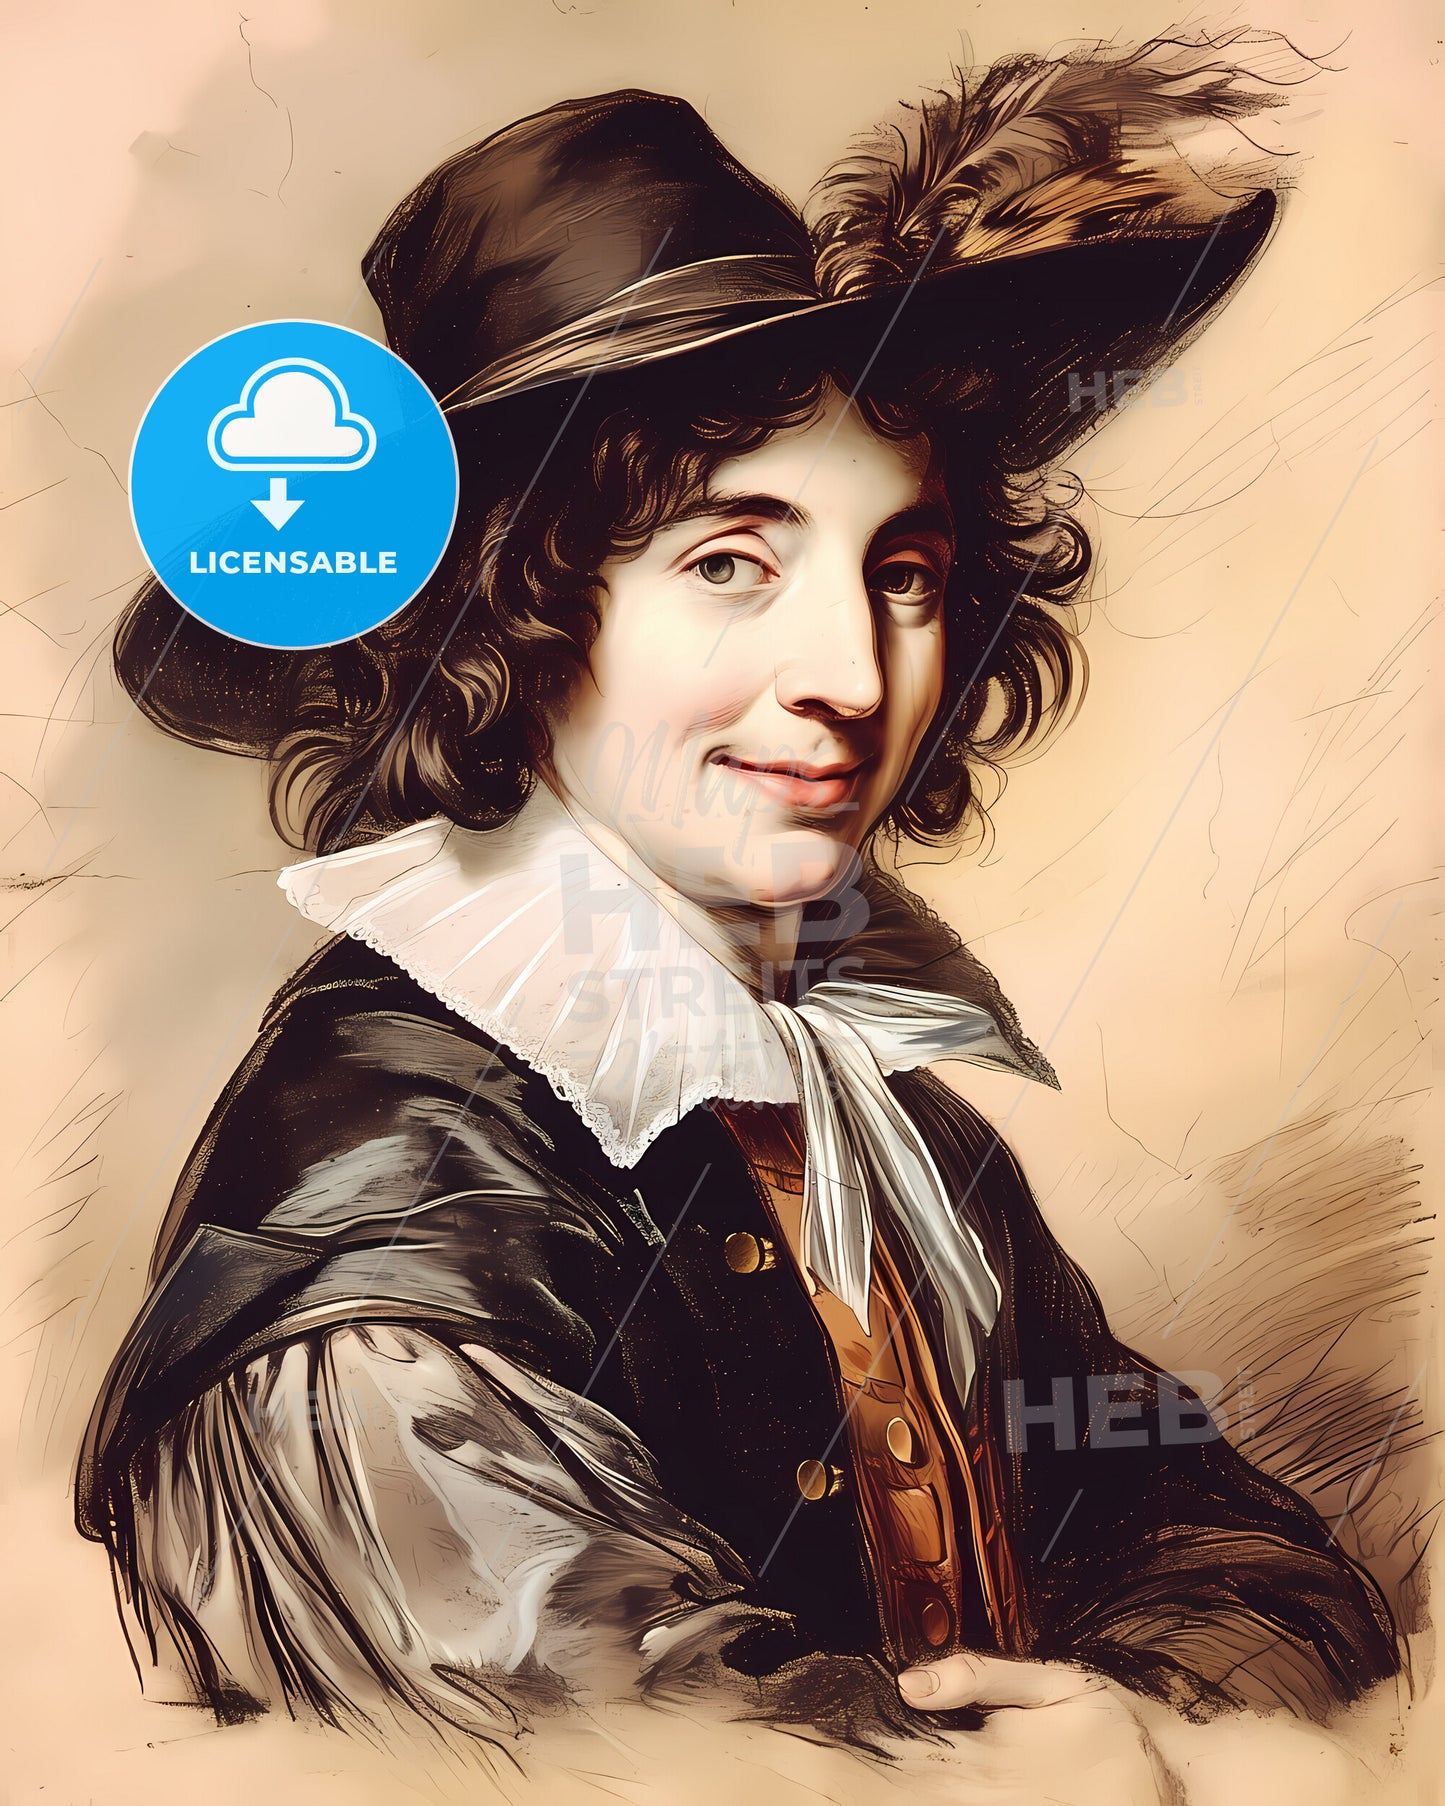 John, Locke, 1632 - 1704, a man in a hat